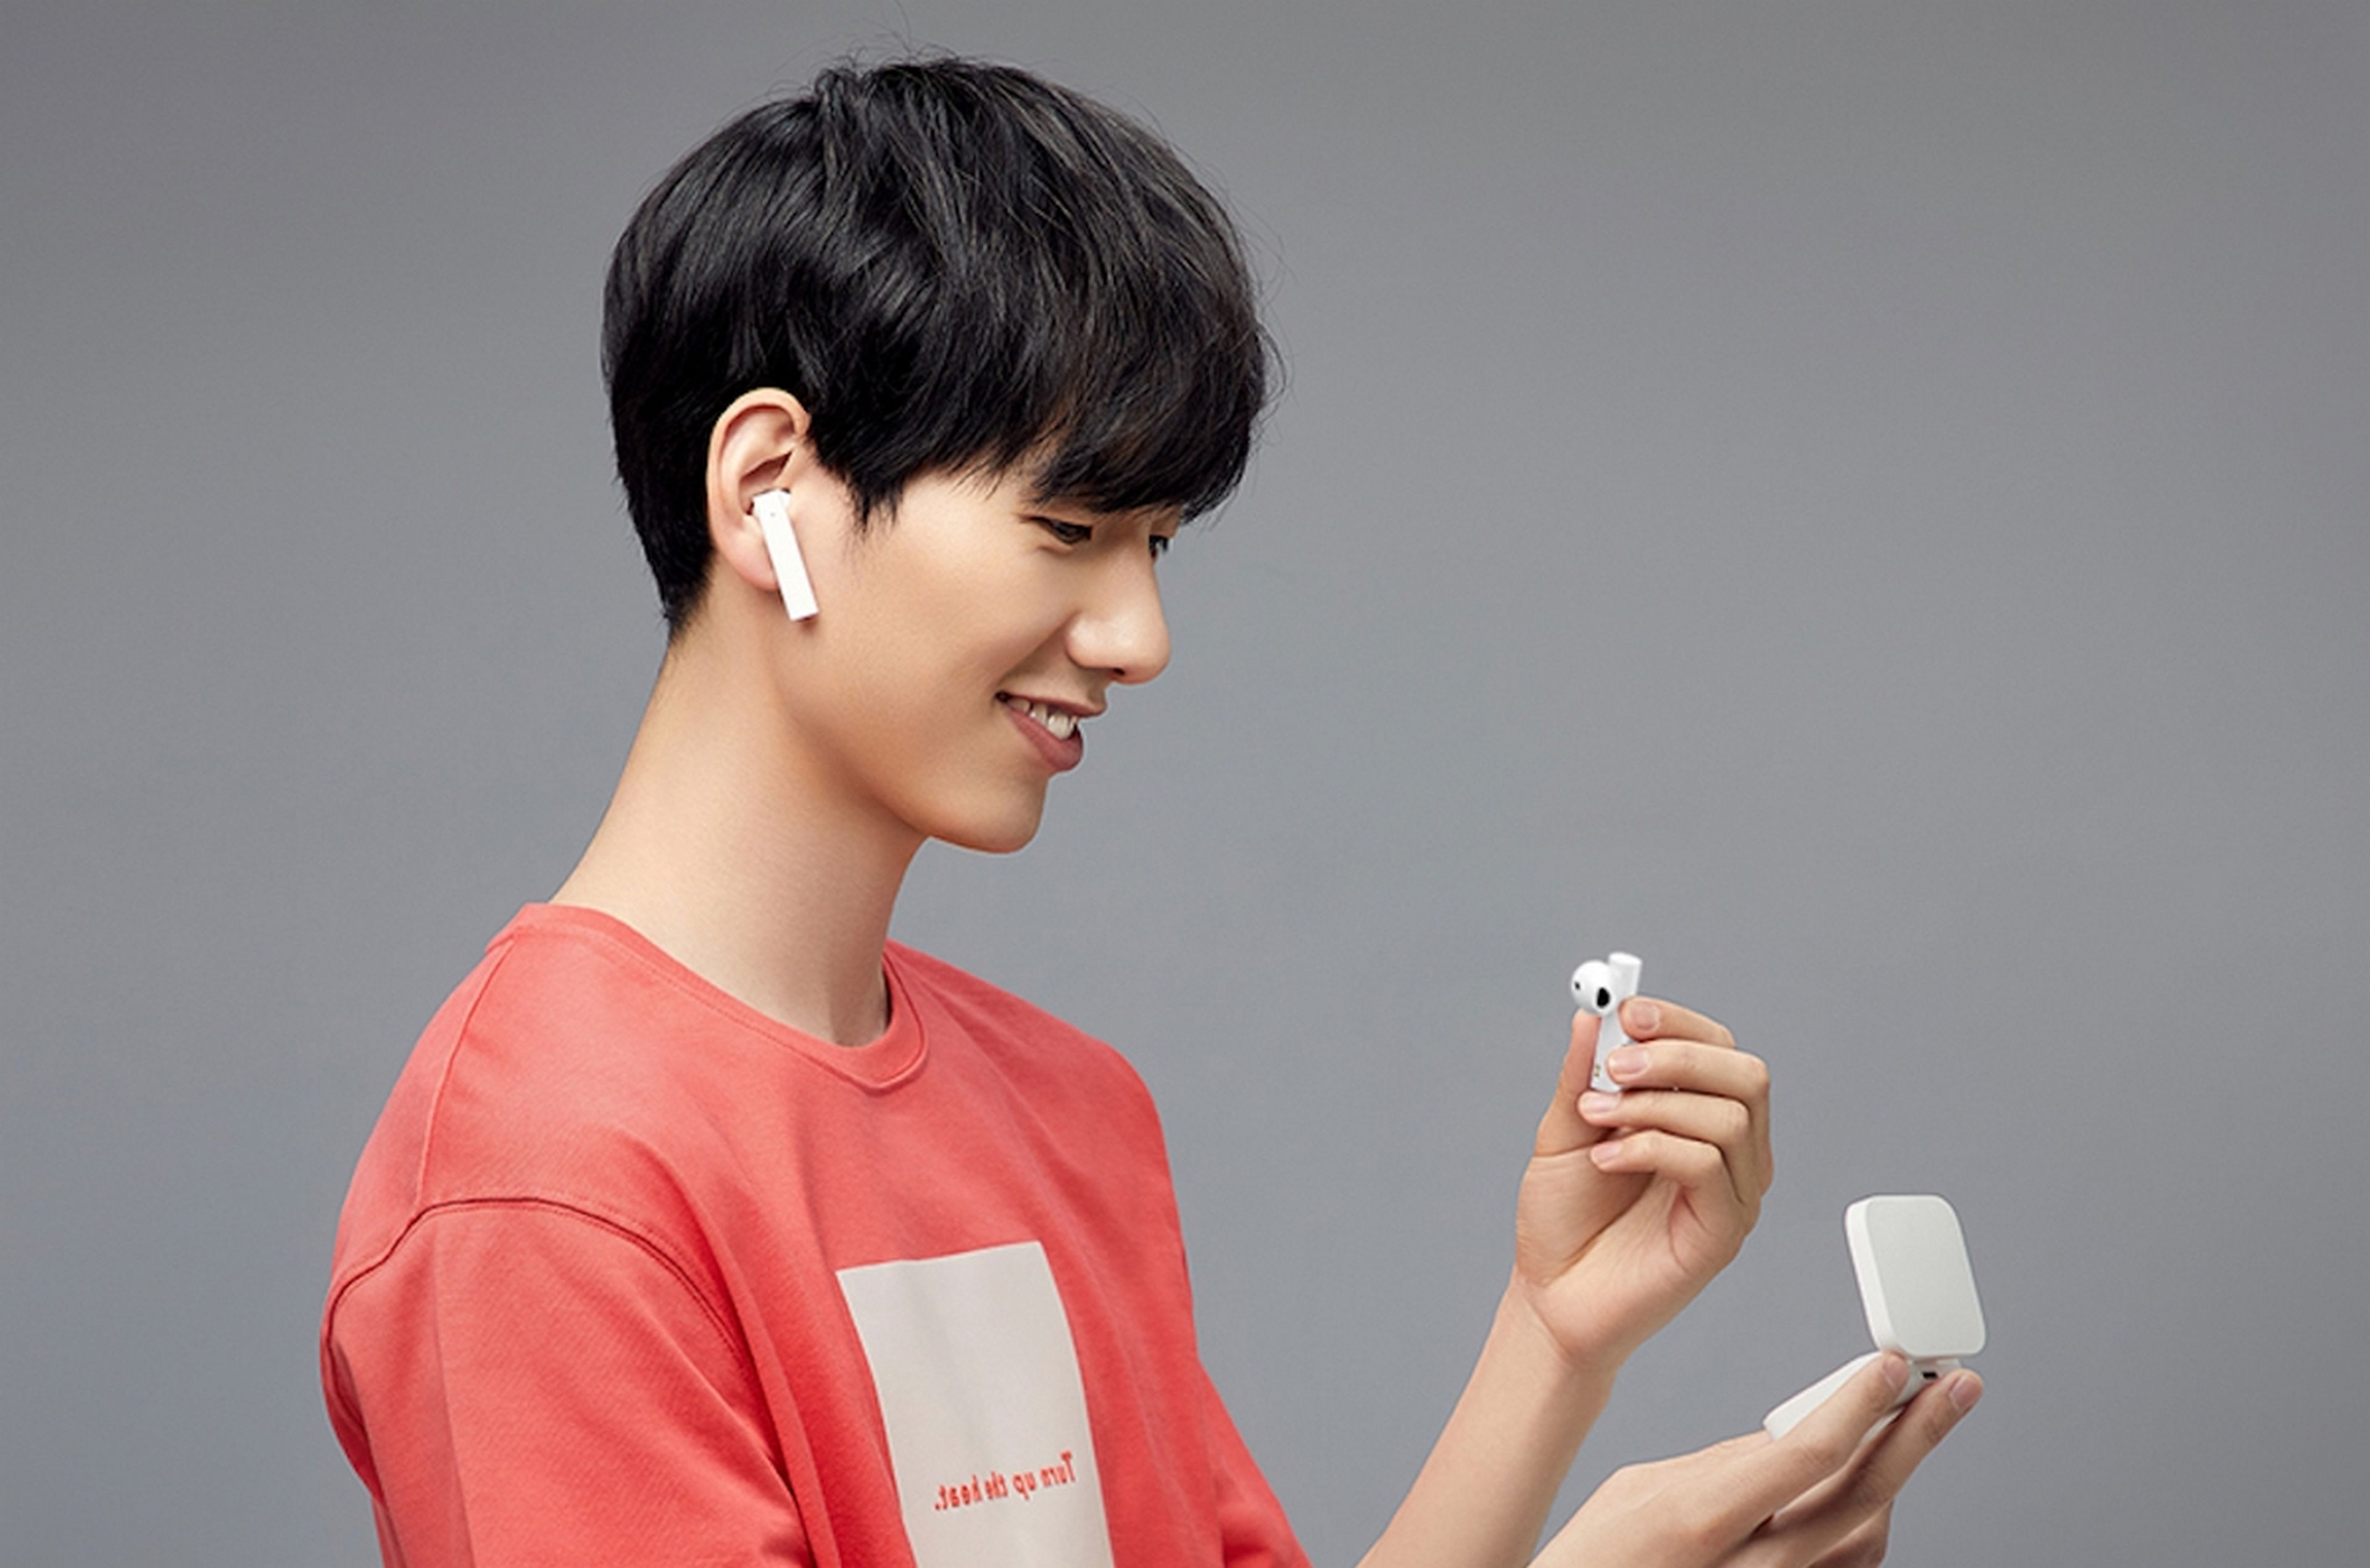 Mi True Wireless Earphones 2 Basic, así son los nuevos auriculares baratos de Xiaomi con cancelación de ruido